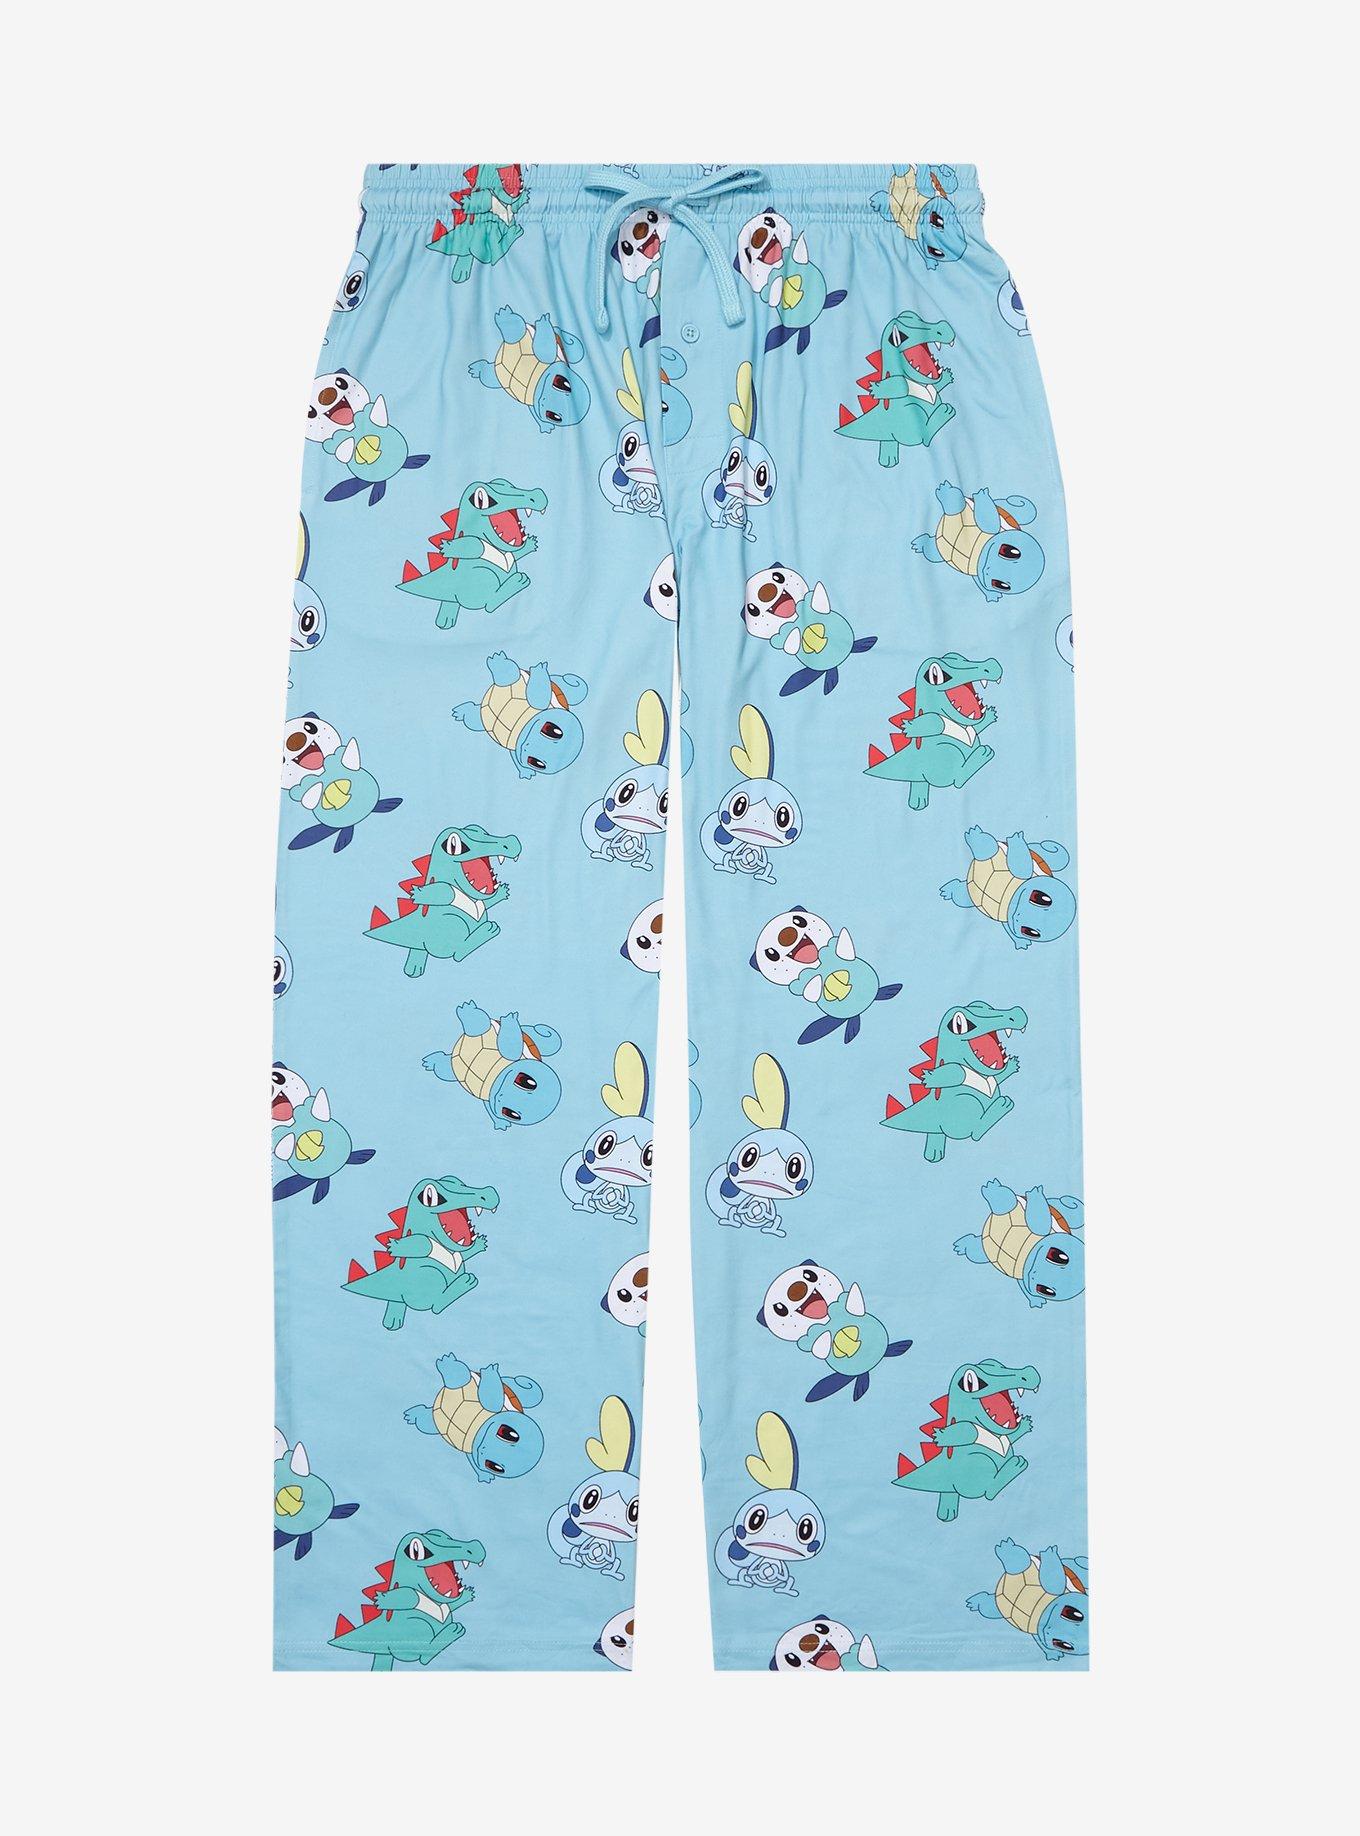 Disney Women's and Women's Plus Hocus Pocus Plush Pajama Joggers 